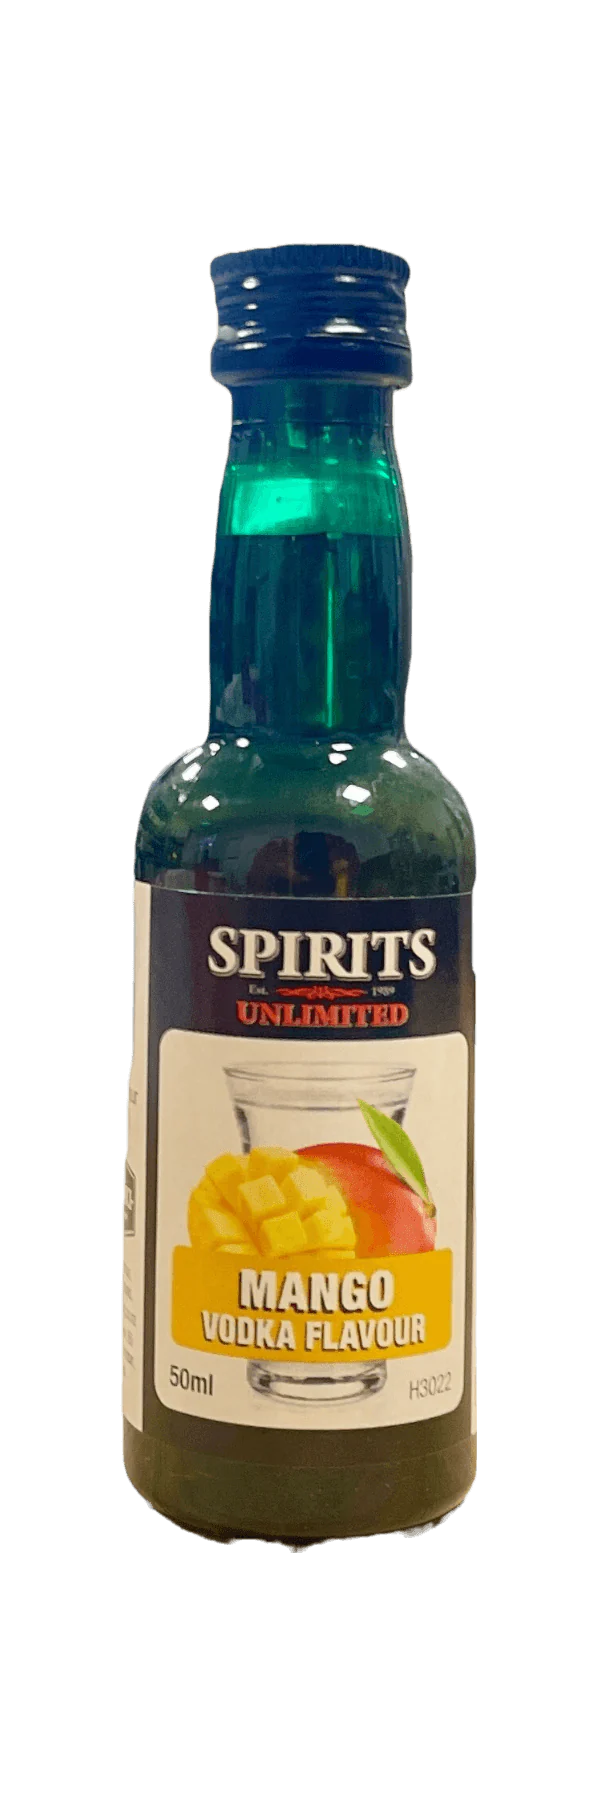 Spirits Unlimited Mango Vodka Spirit Flavour 50ml